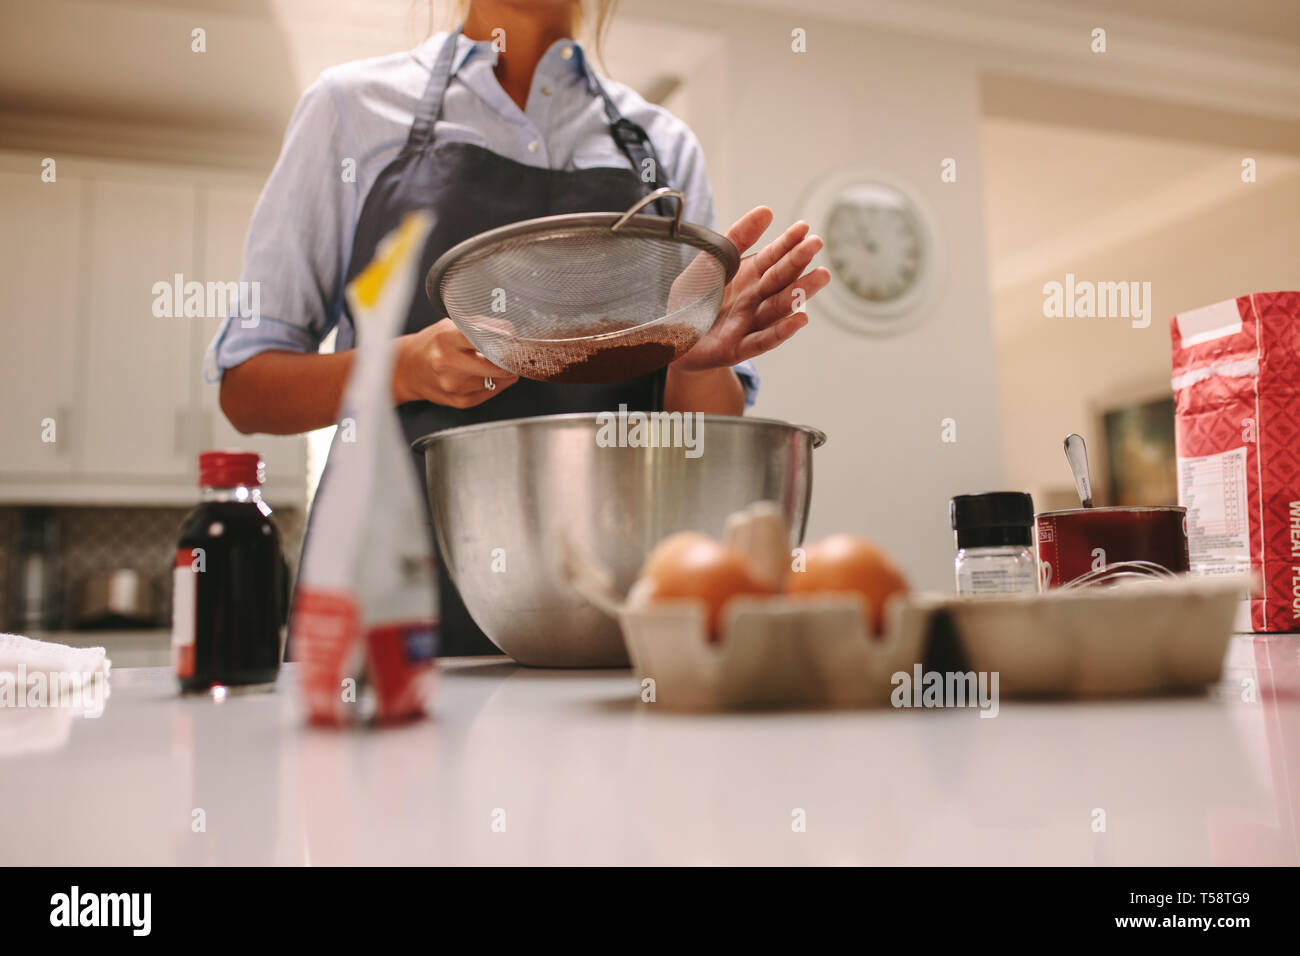 Chef sasser la farine dans un bol pour faire un gâteau au chocolat. Femme portant un tablier la cuisson dans la cuisine avec des ingrédients autour. Banque D'Images